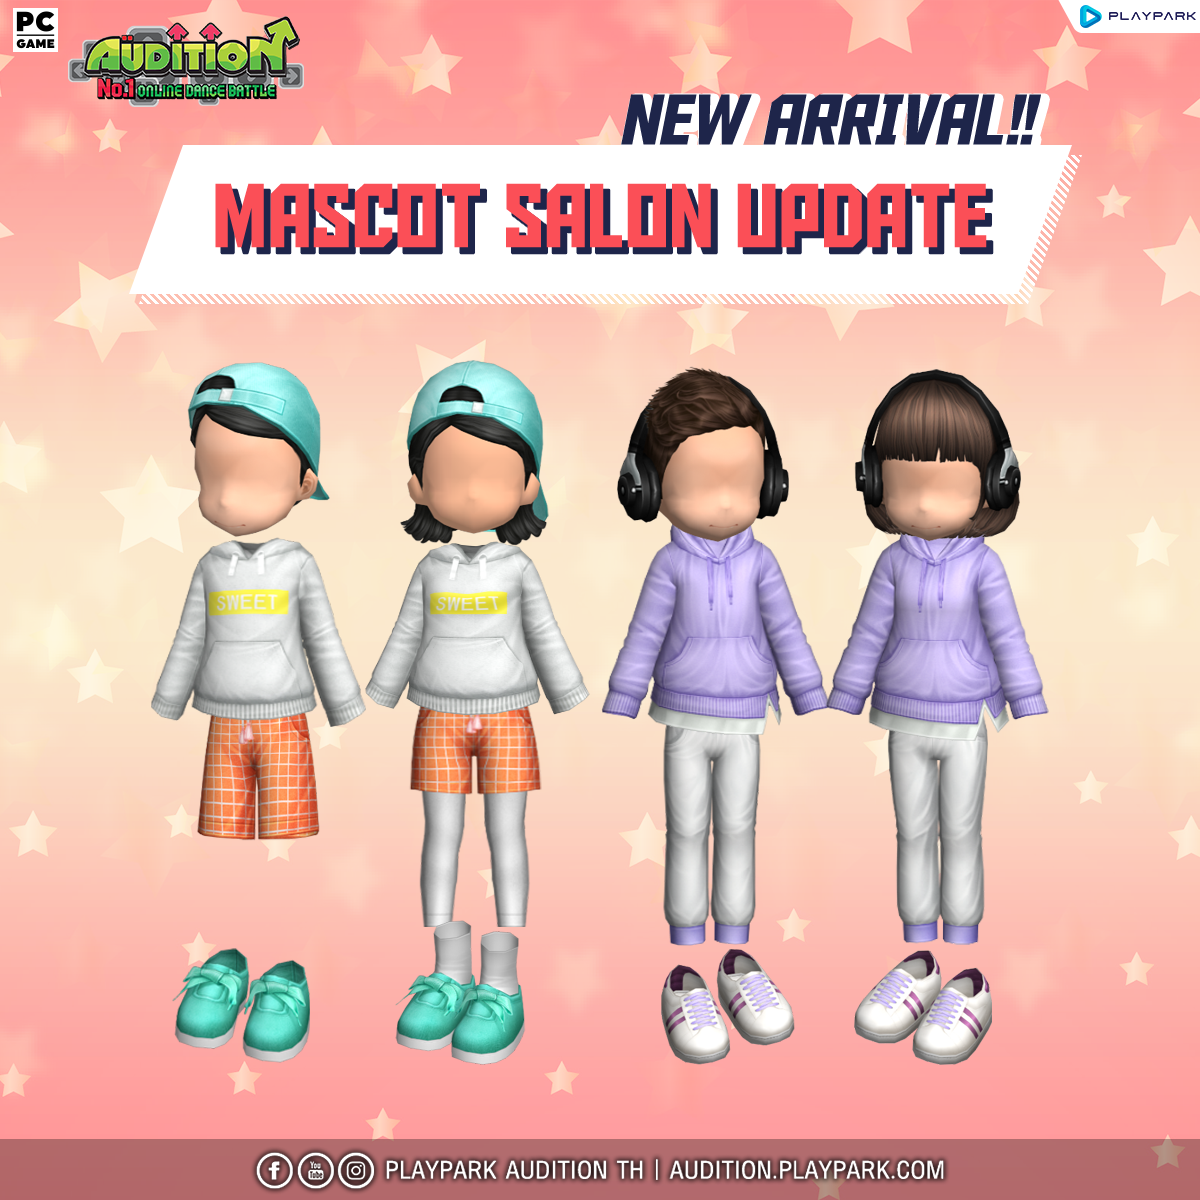 8 มิถุนายนนี้ Update เพลงใหม่, Mascot Salon และไอเทมใหม่!!  